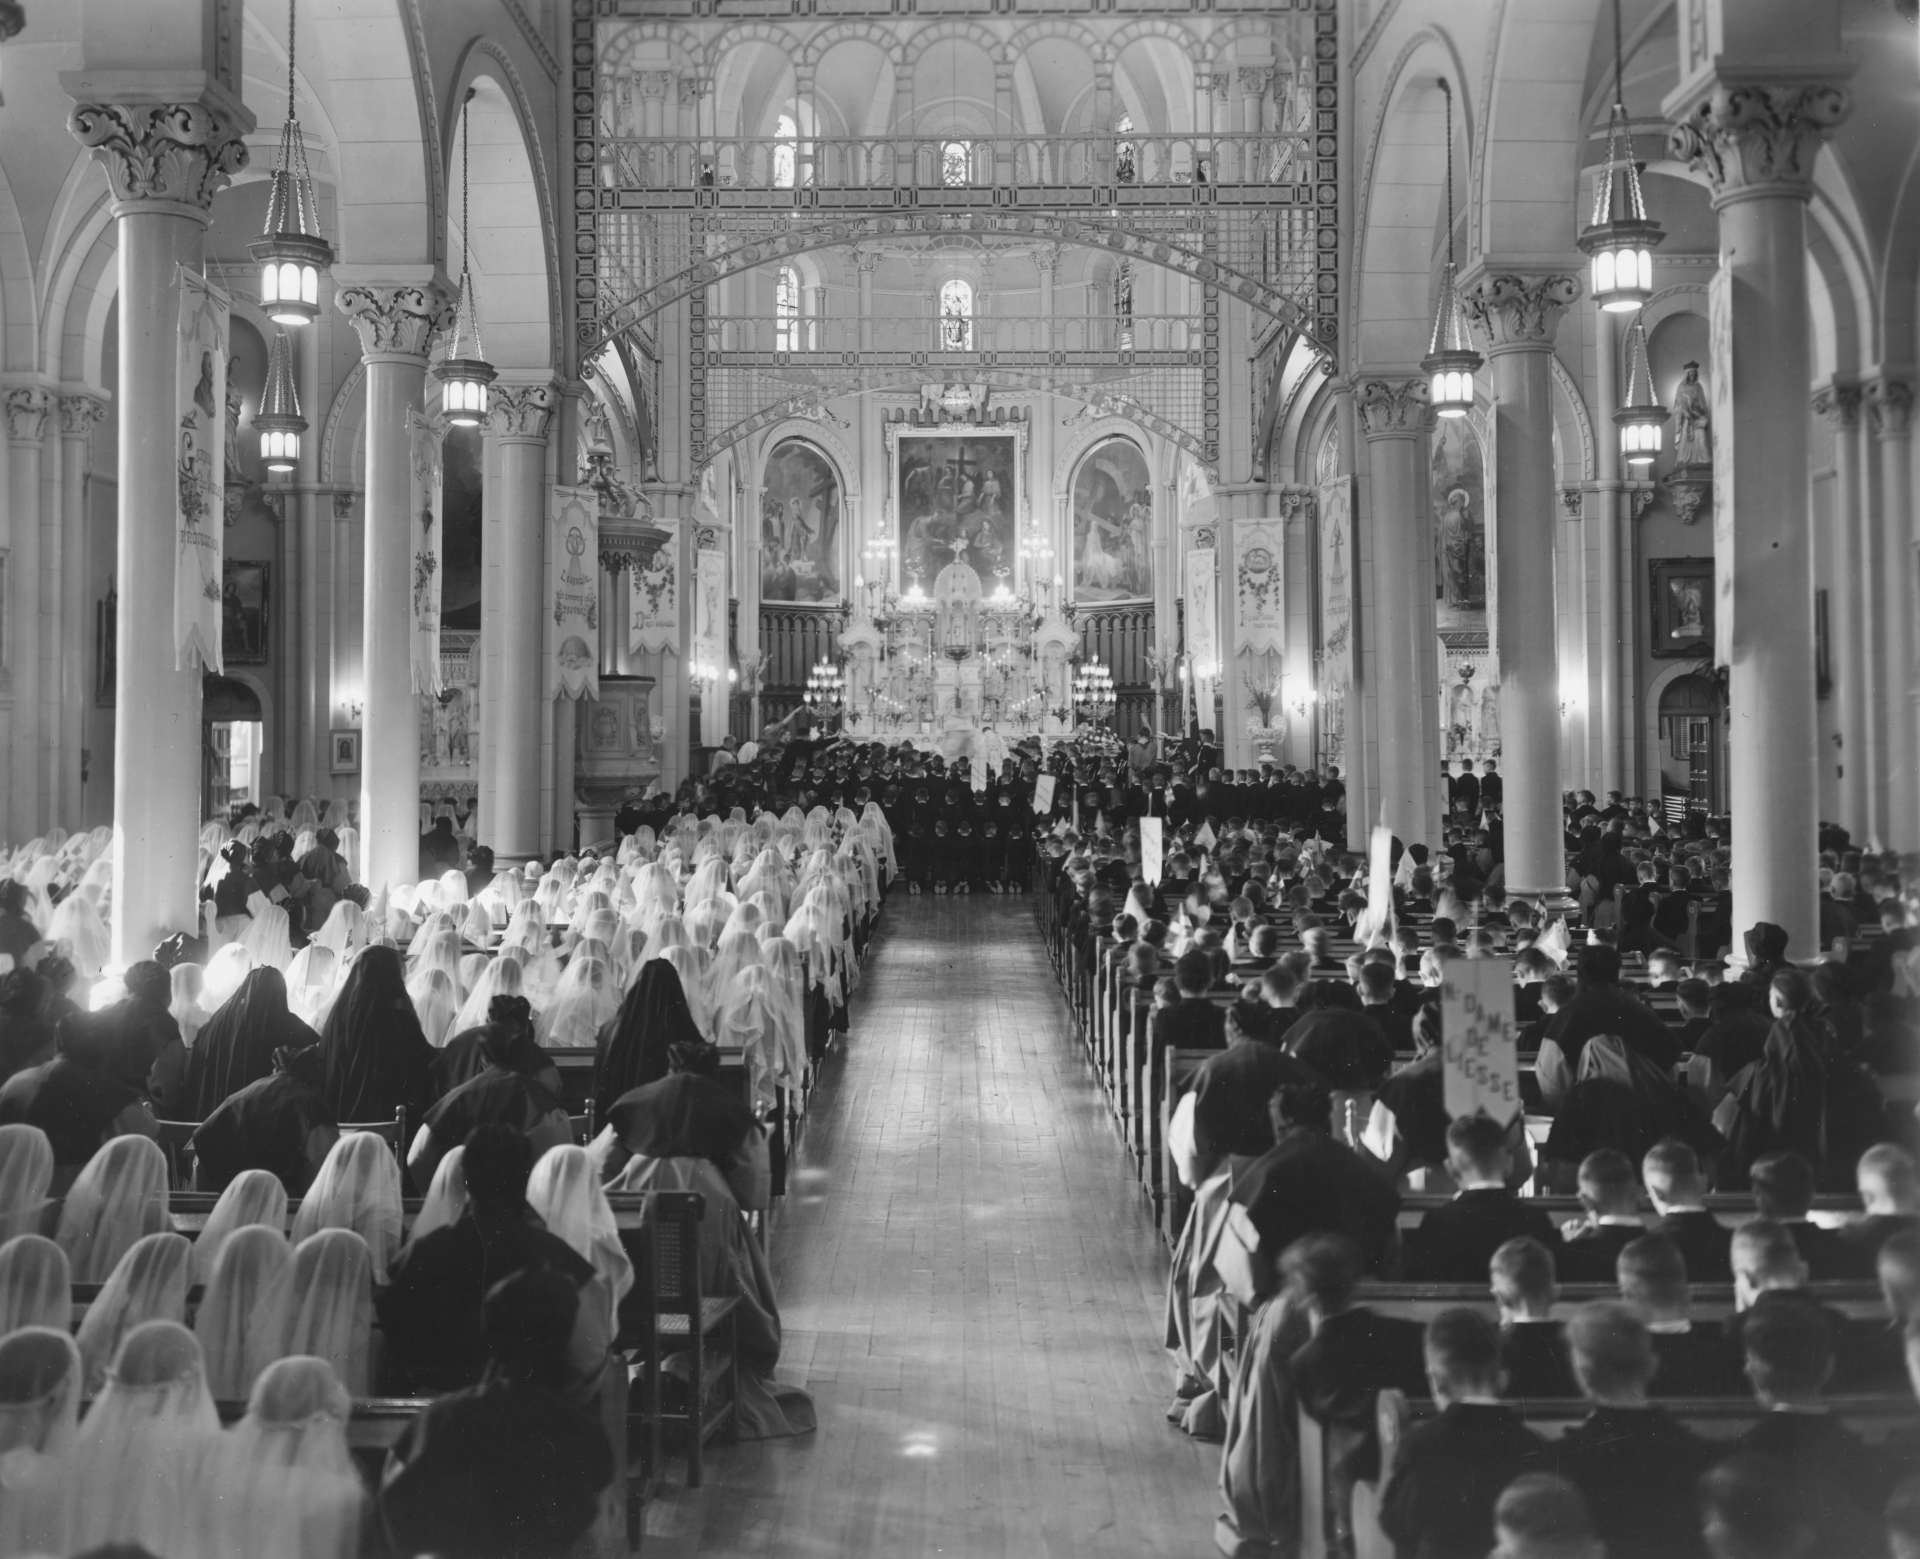 Photographie historique montrant une assemblée nombreuse assistant à une cérémonie dans une église à l'intérieur orné de vitraux.